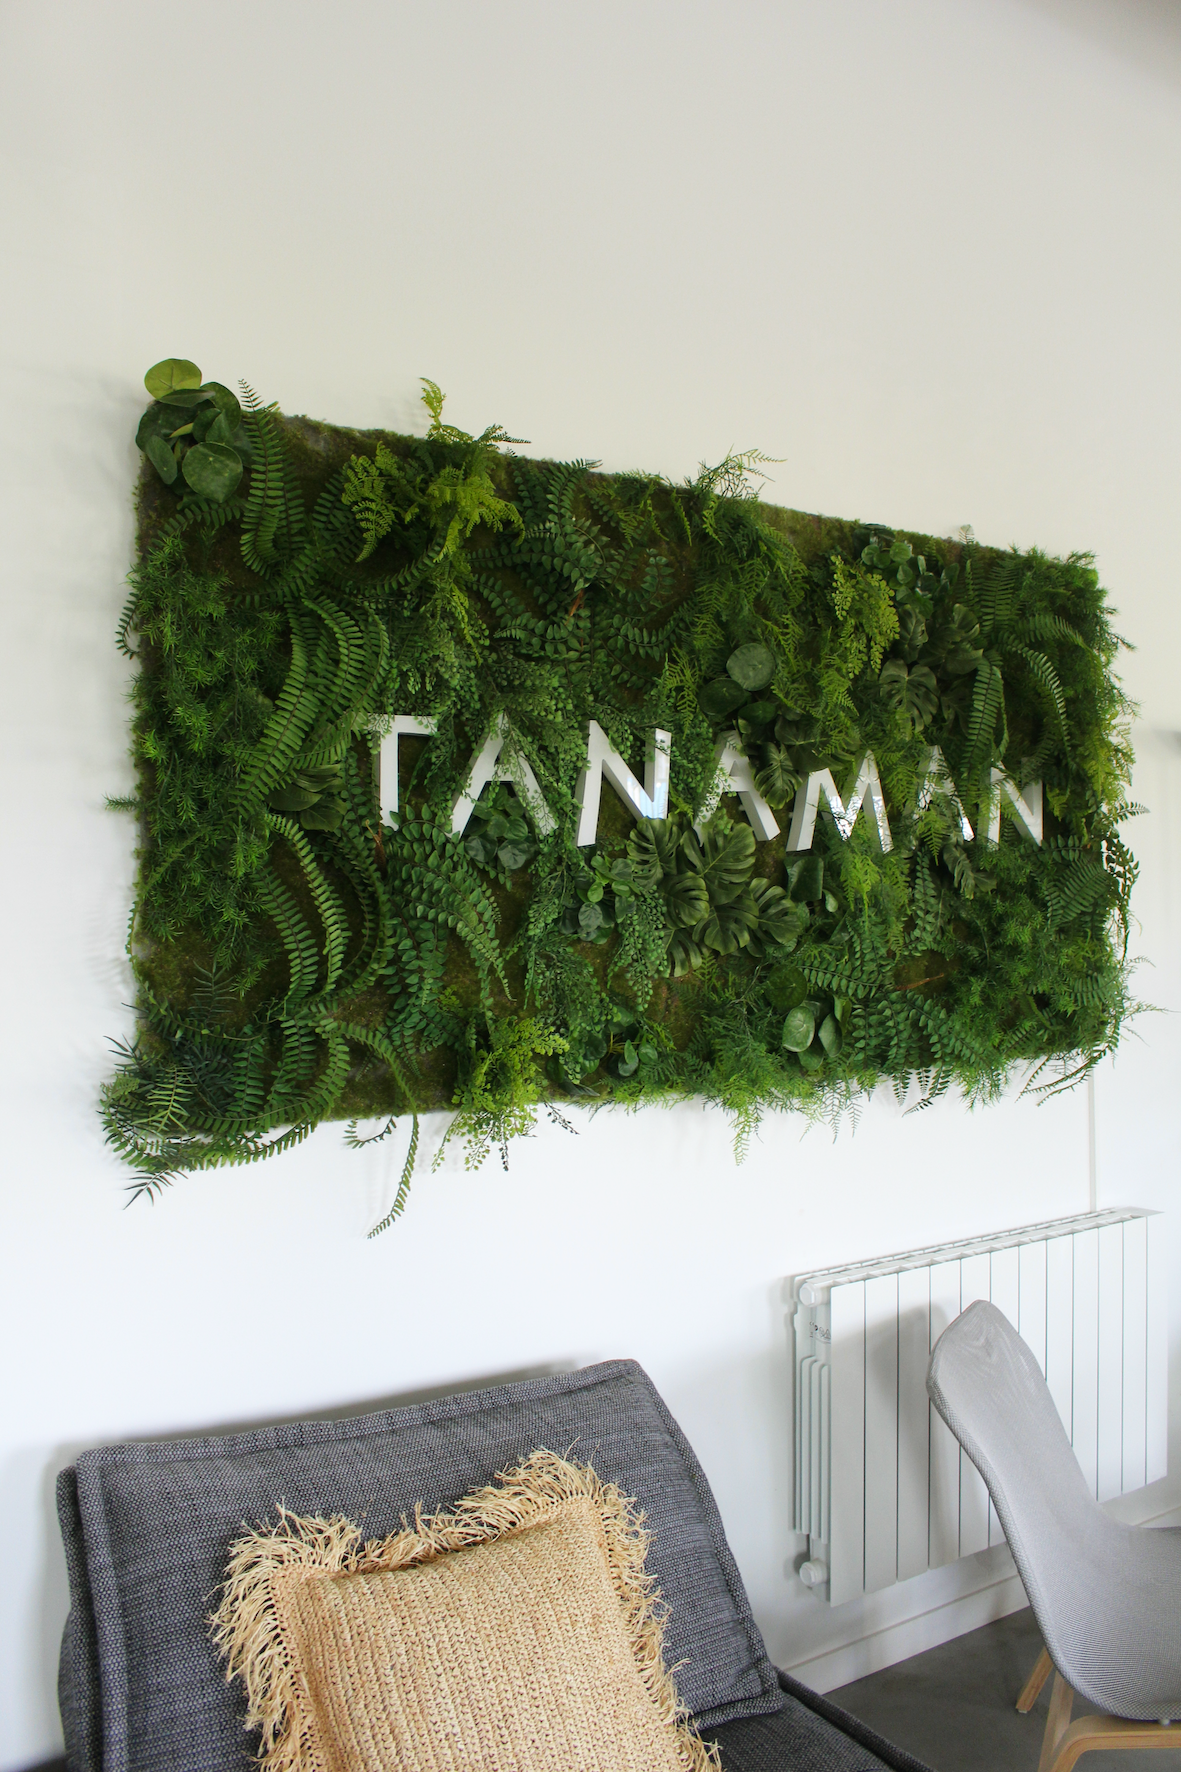 Mur végétal avec le logo de l'entreprise Tanaman